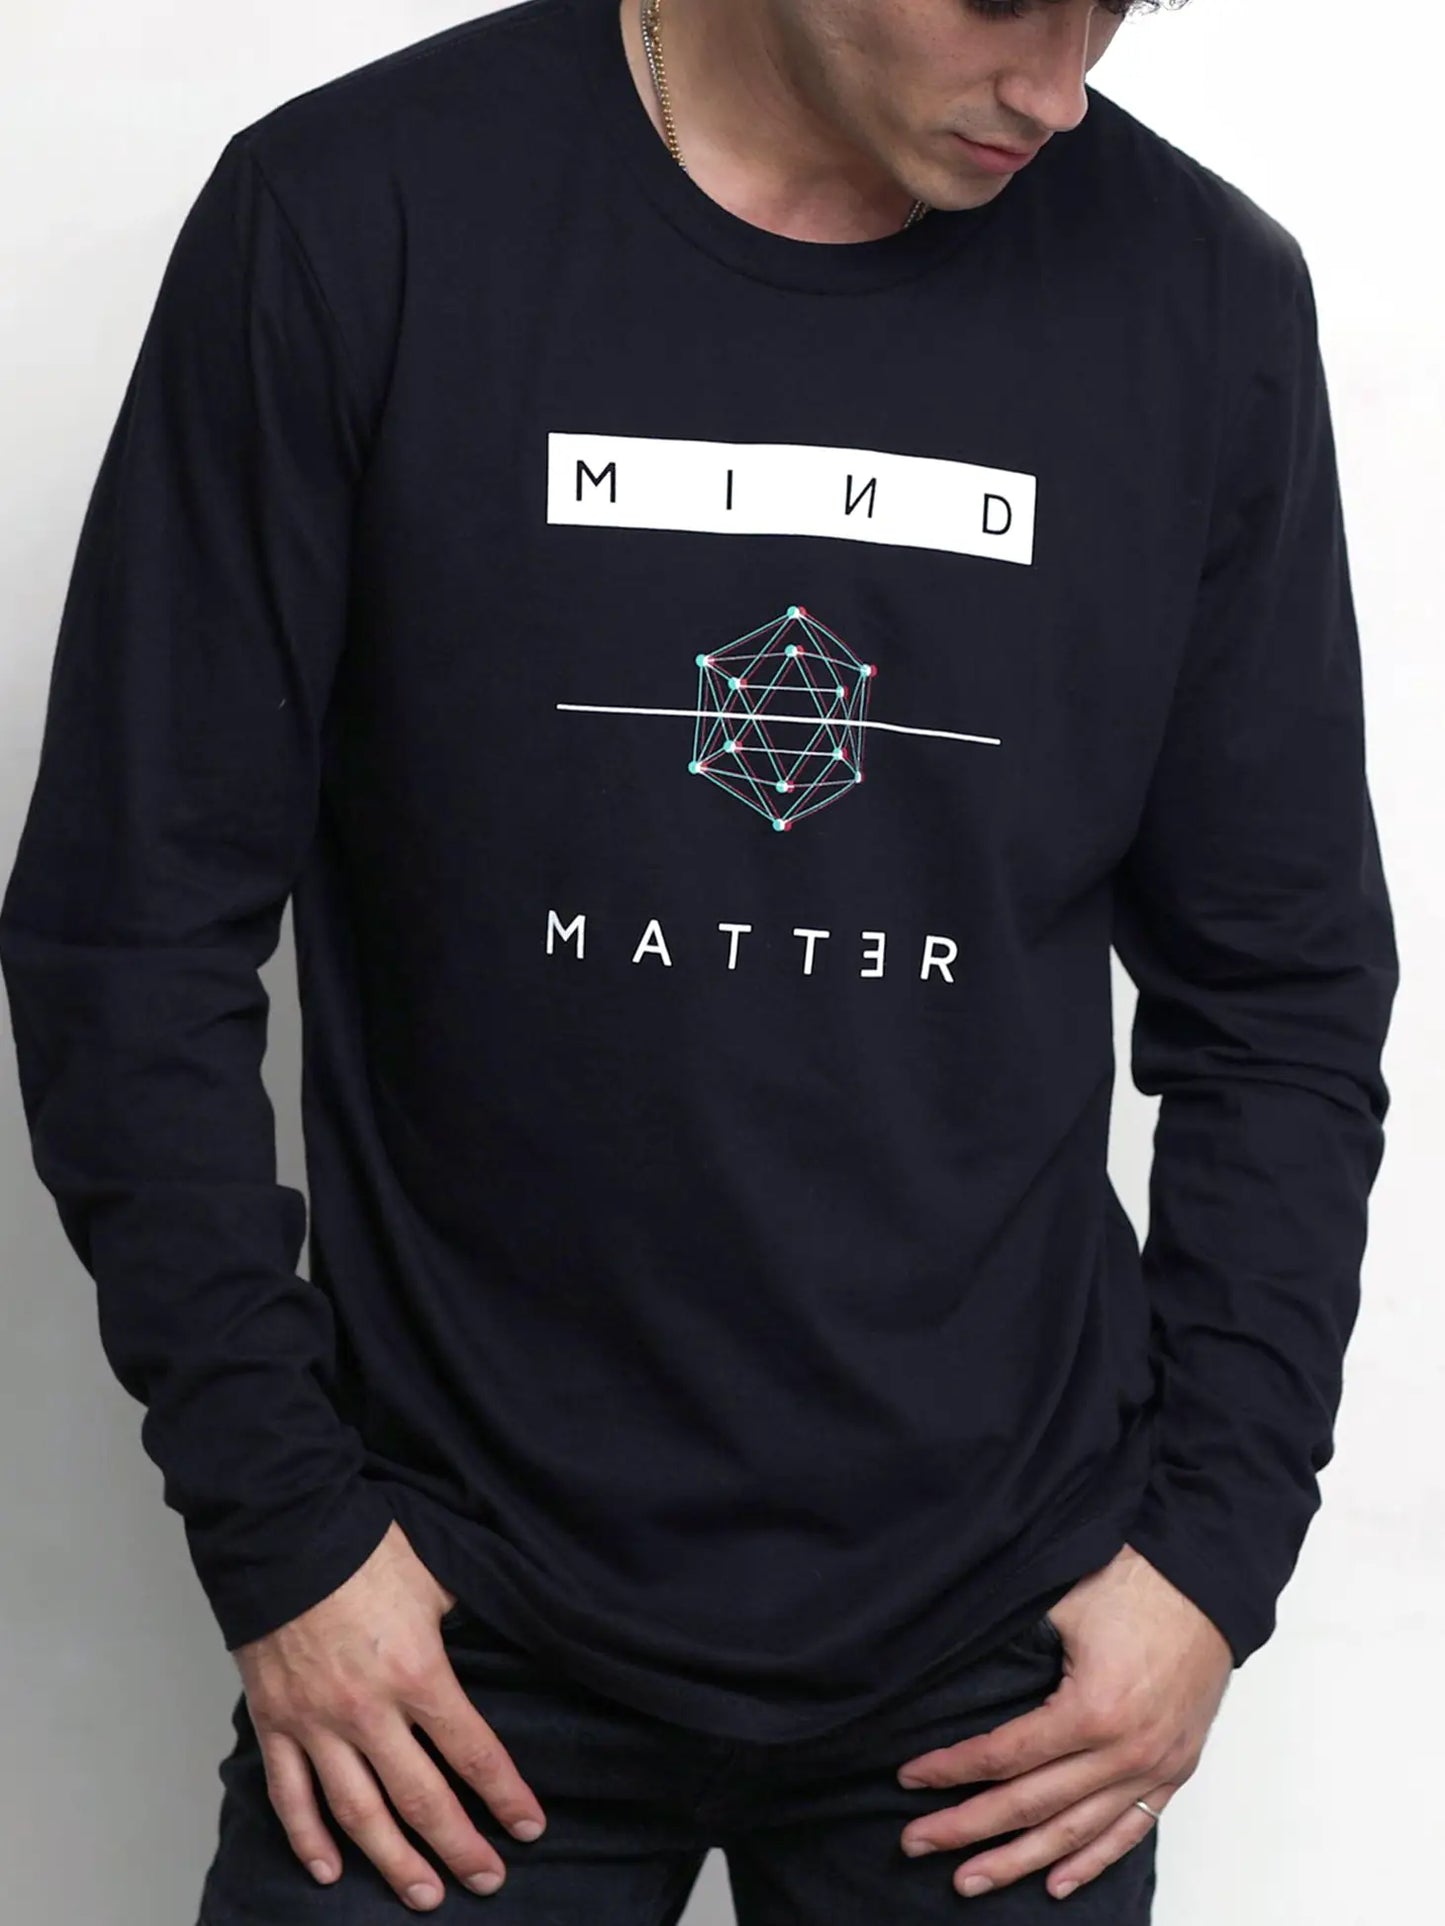 Mind Over Matter Unisex Long Sleeve Tee Shirt